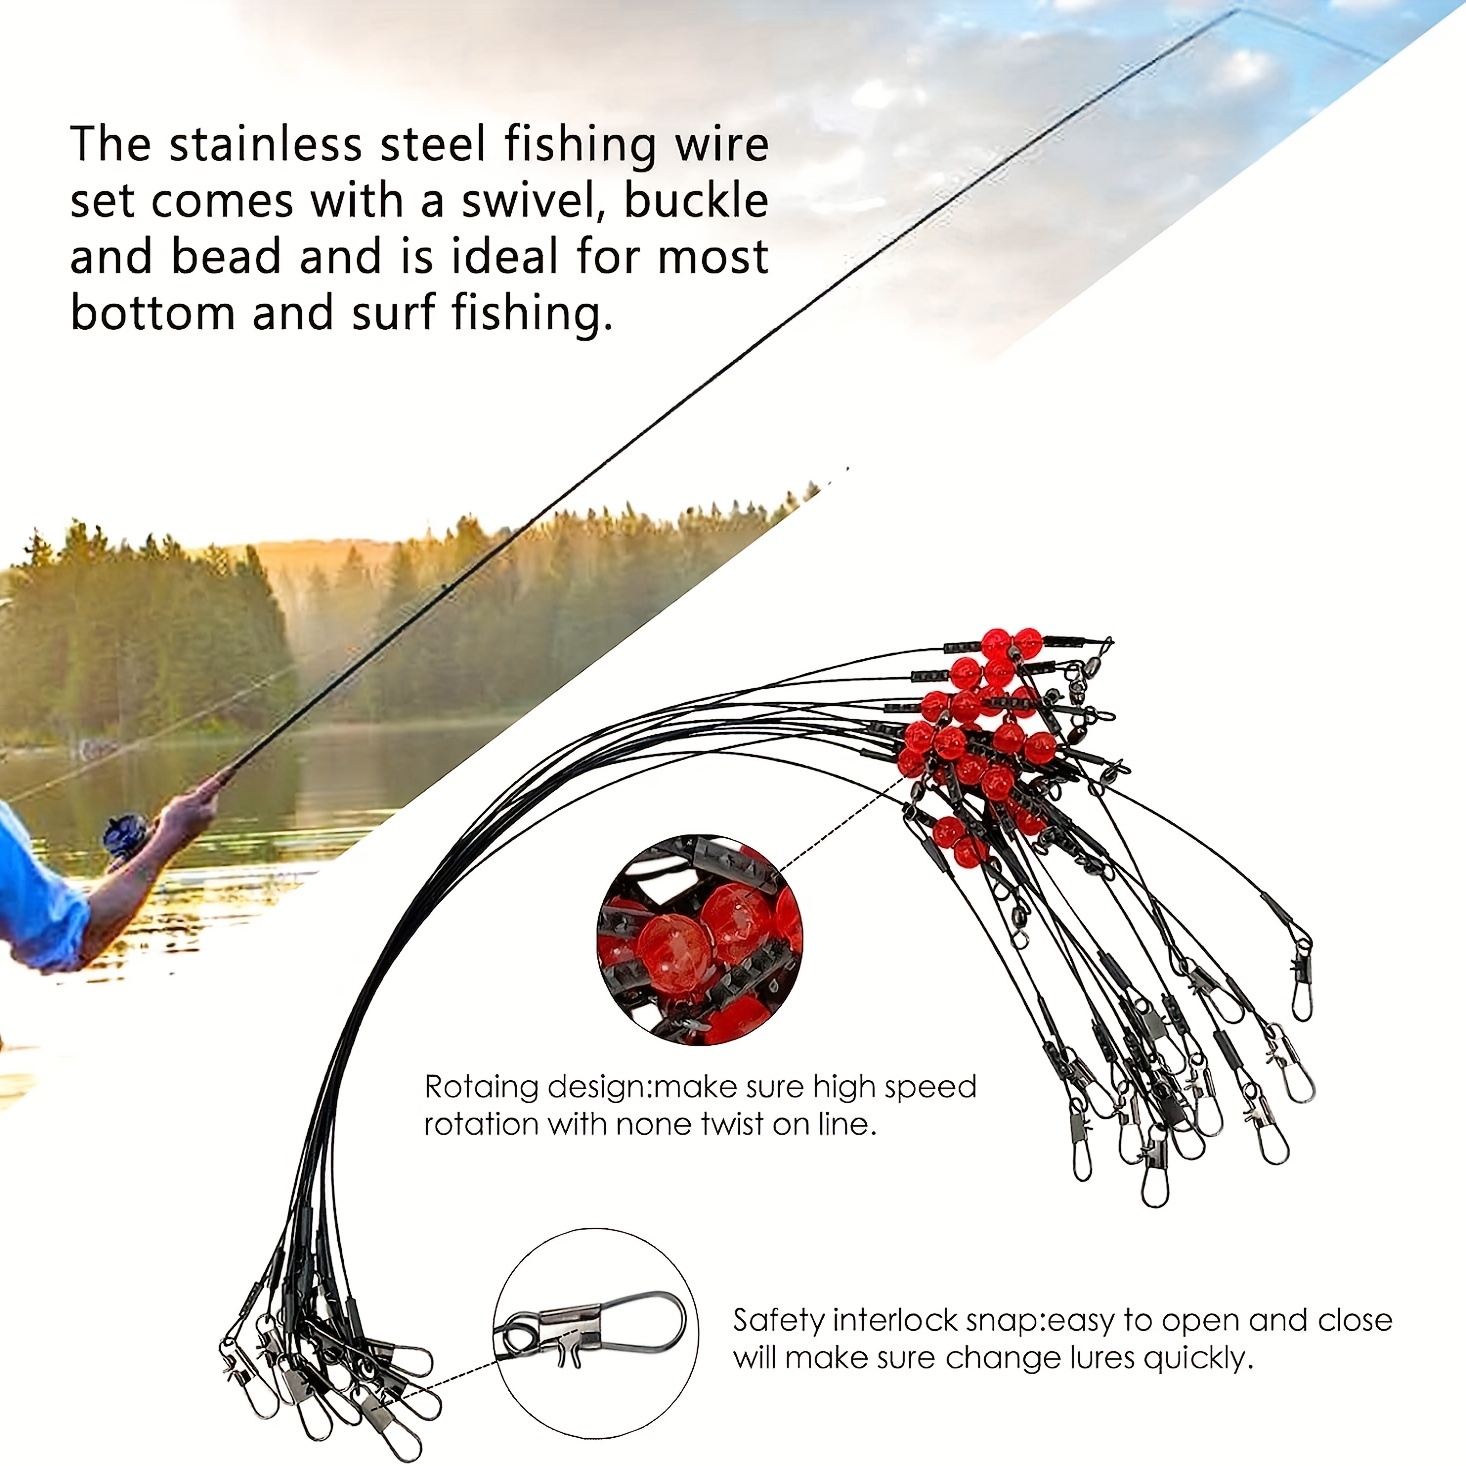 YOTO 20pcs Steel Fishing Leaders Wire丨125LB Heavy Duty Saltwater